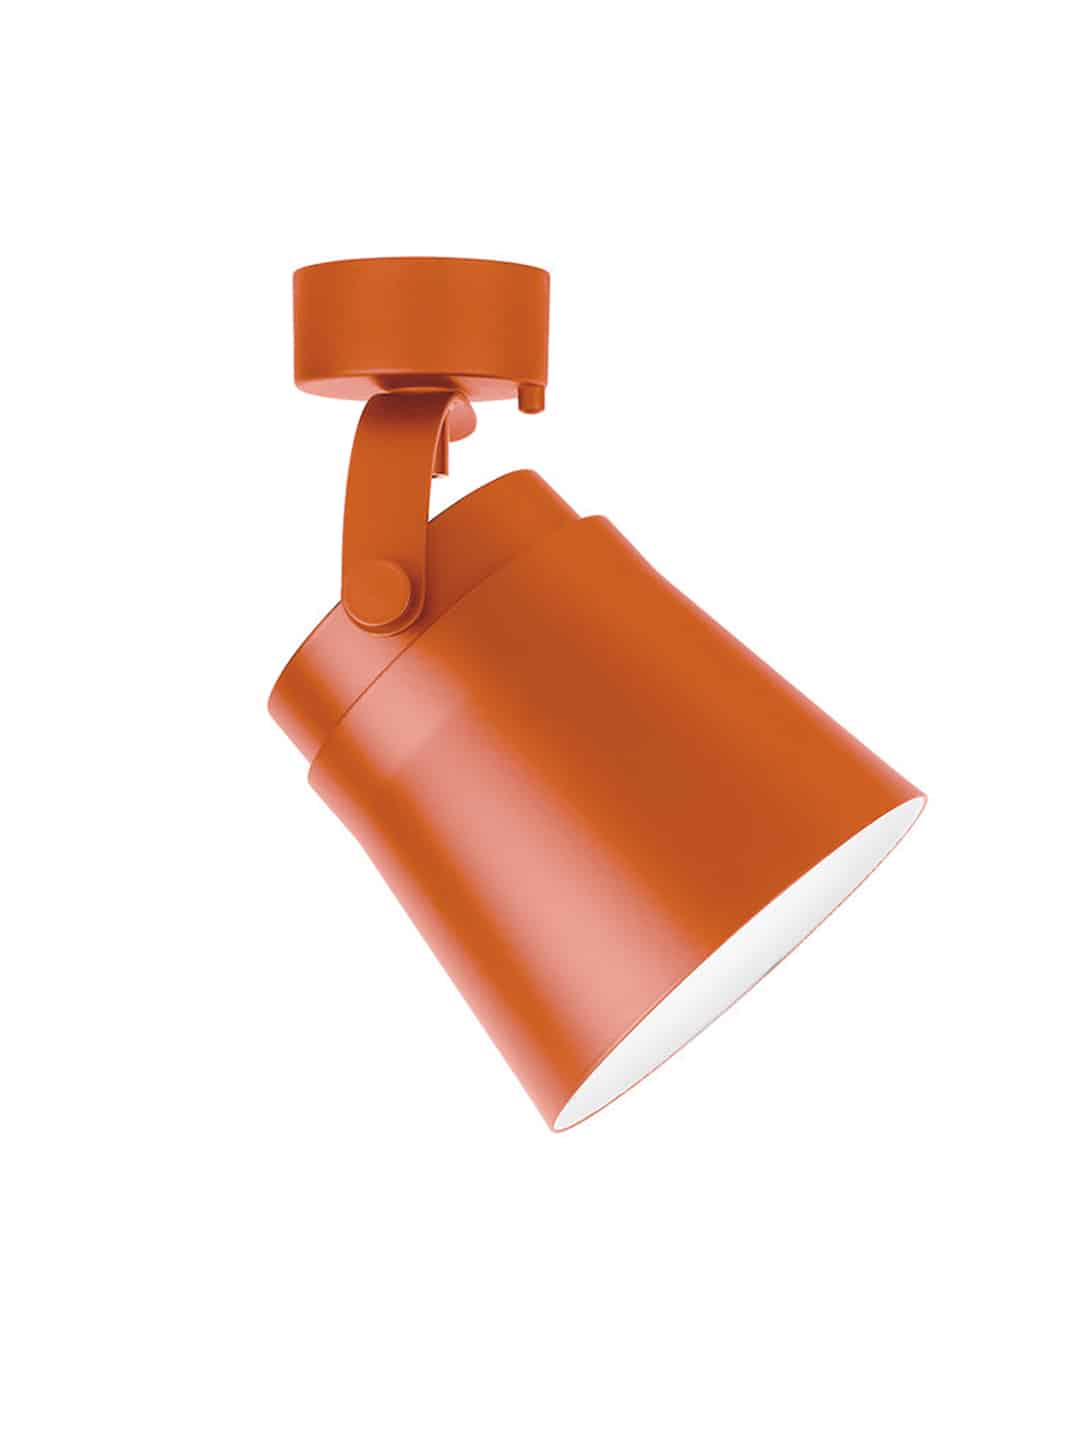 Премиум потолочный светильник Zero Lighting Ginza Single ораньжевого цвета